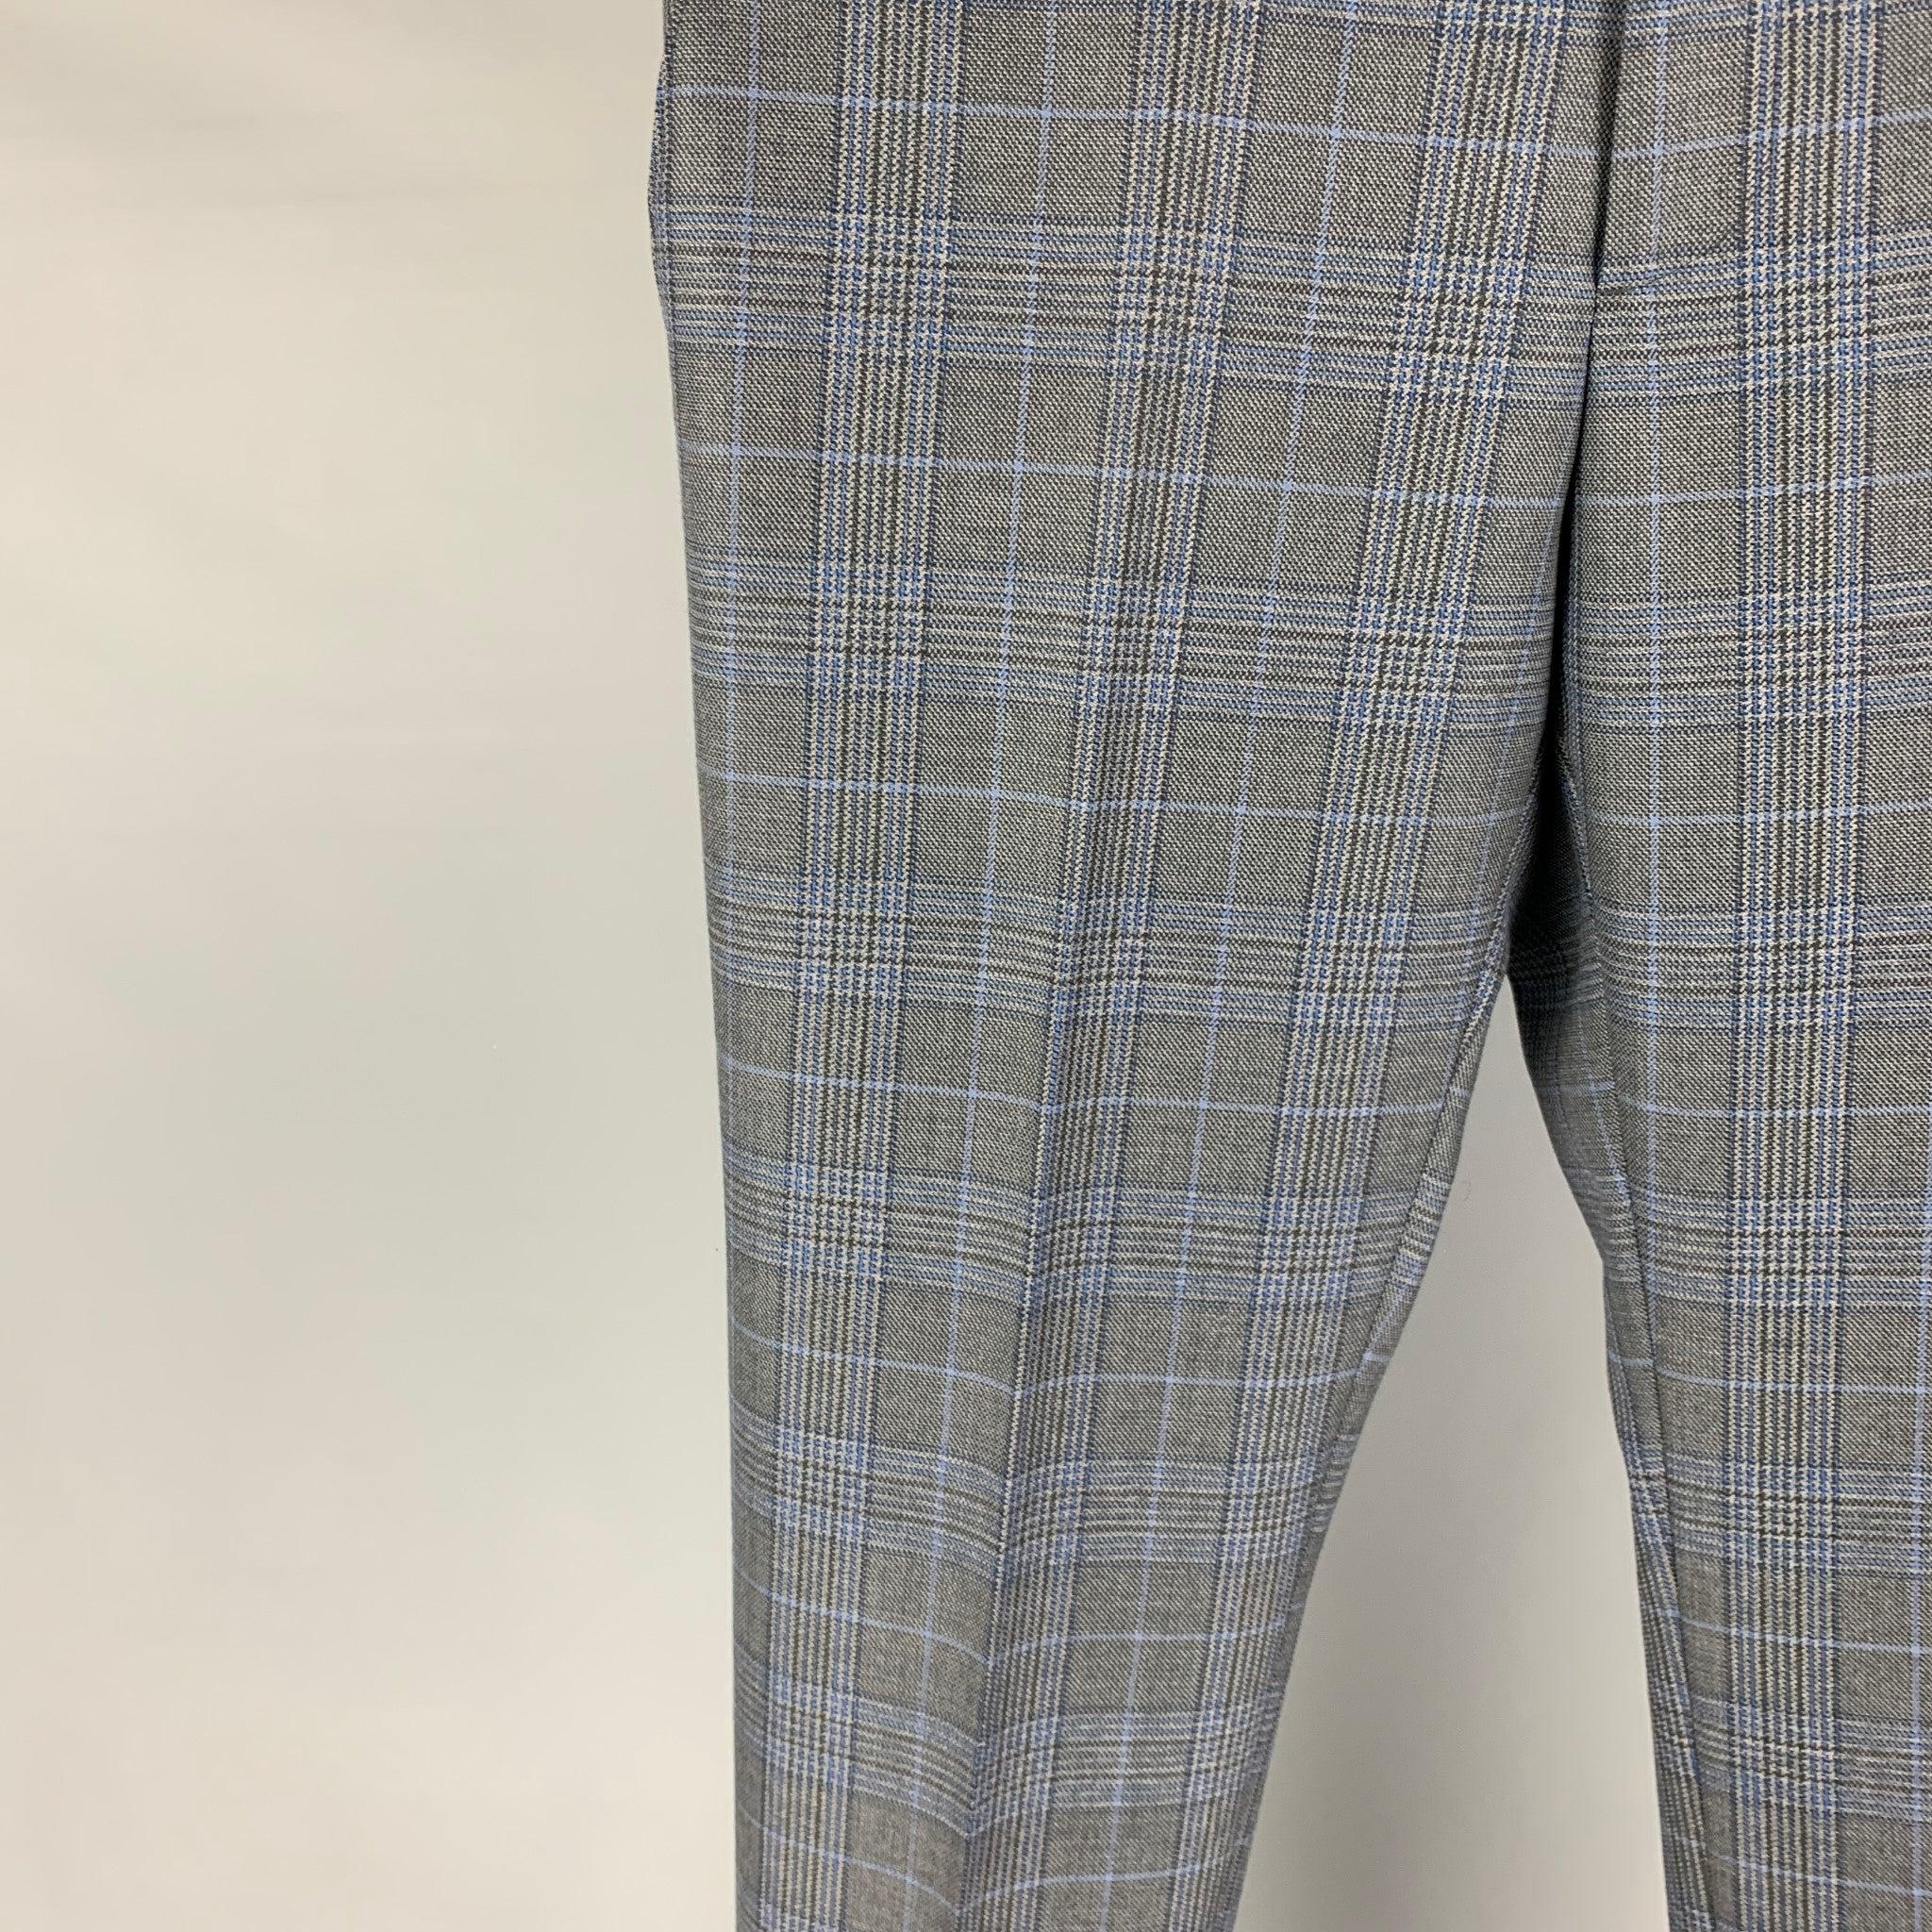 Le pantalon habillé ETRO se décline en laine écossaise grise et bleue et présente un devant plat, une coupe cintrée et une fermeture à glissière. Fabriquées en Italie.
Excellent
Etat d'occasion. 

Marqué :   48 

Mesures : 
  Taille : 32 pouces